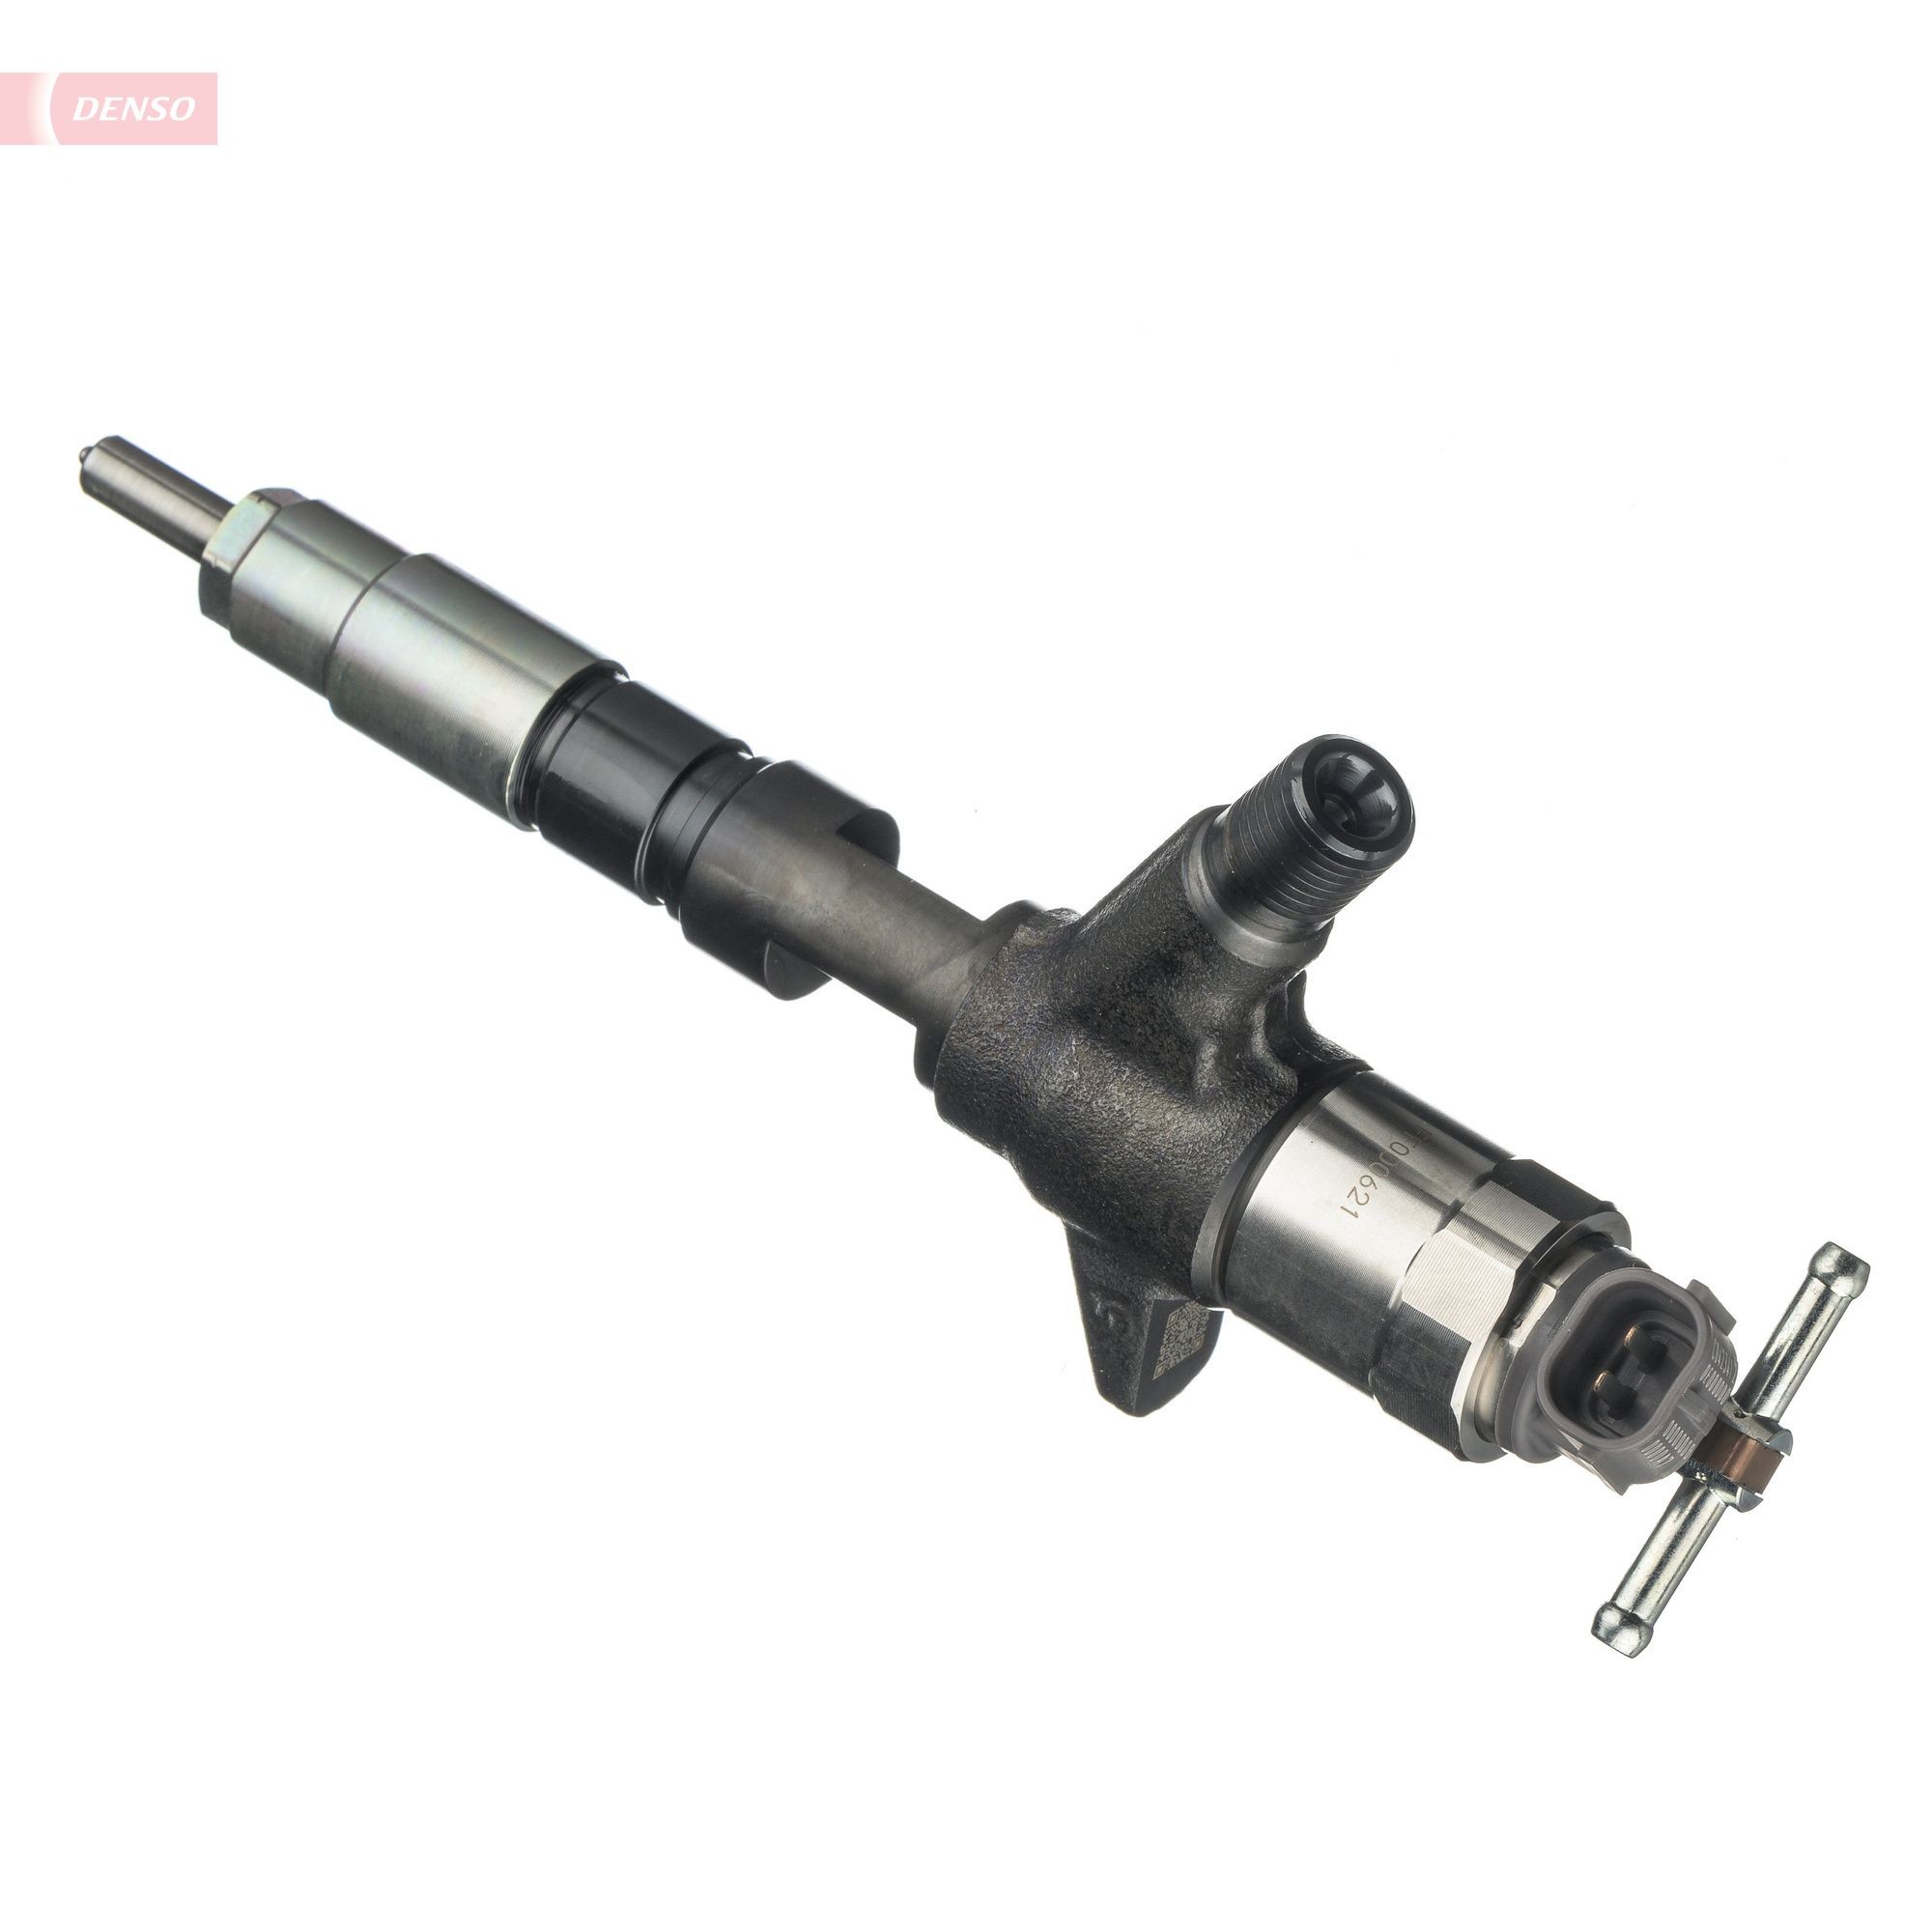 DCRI105550 Nozzle DENSO DCRI105550 review and test